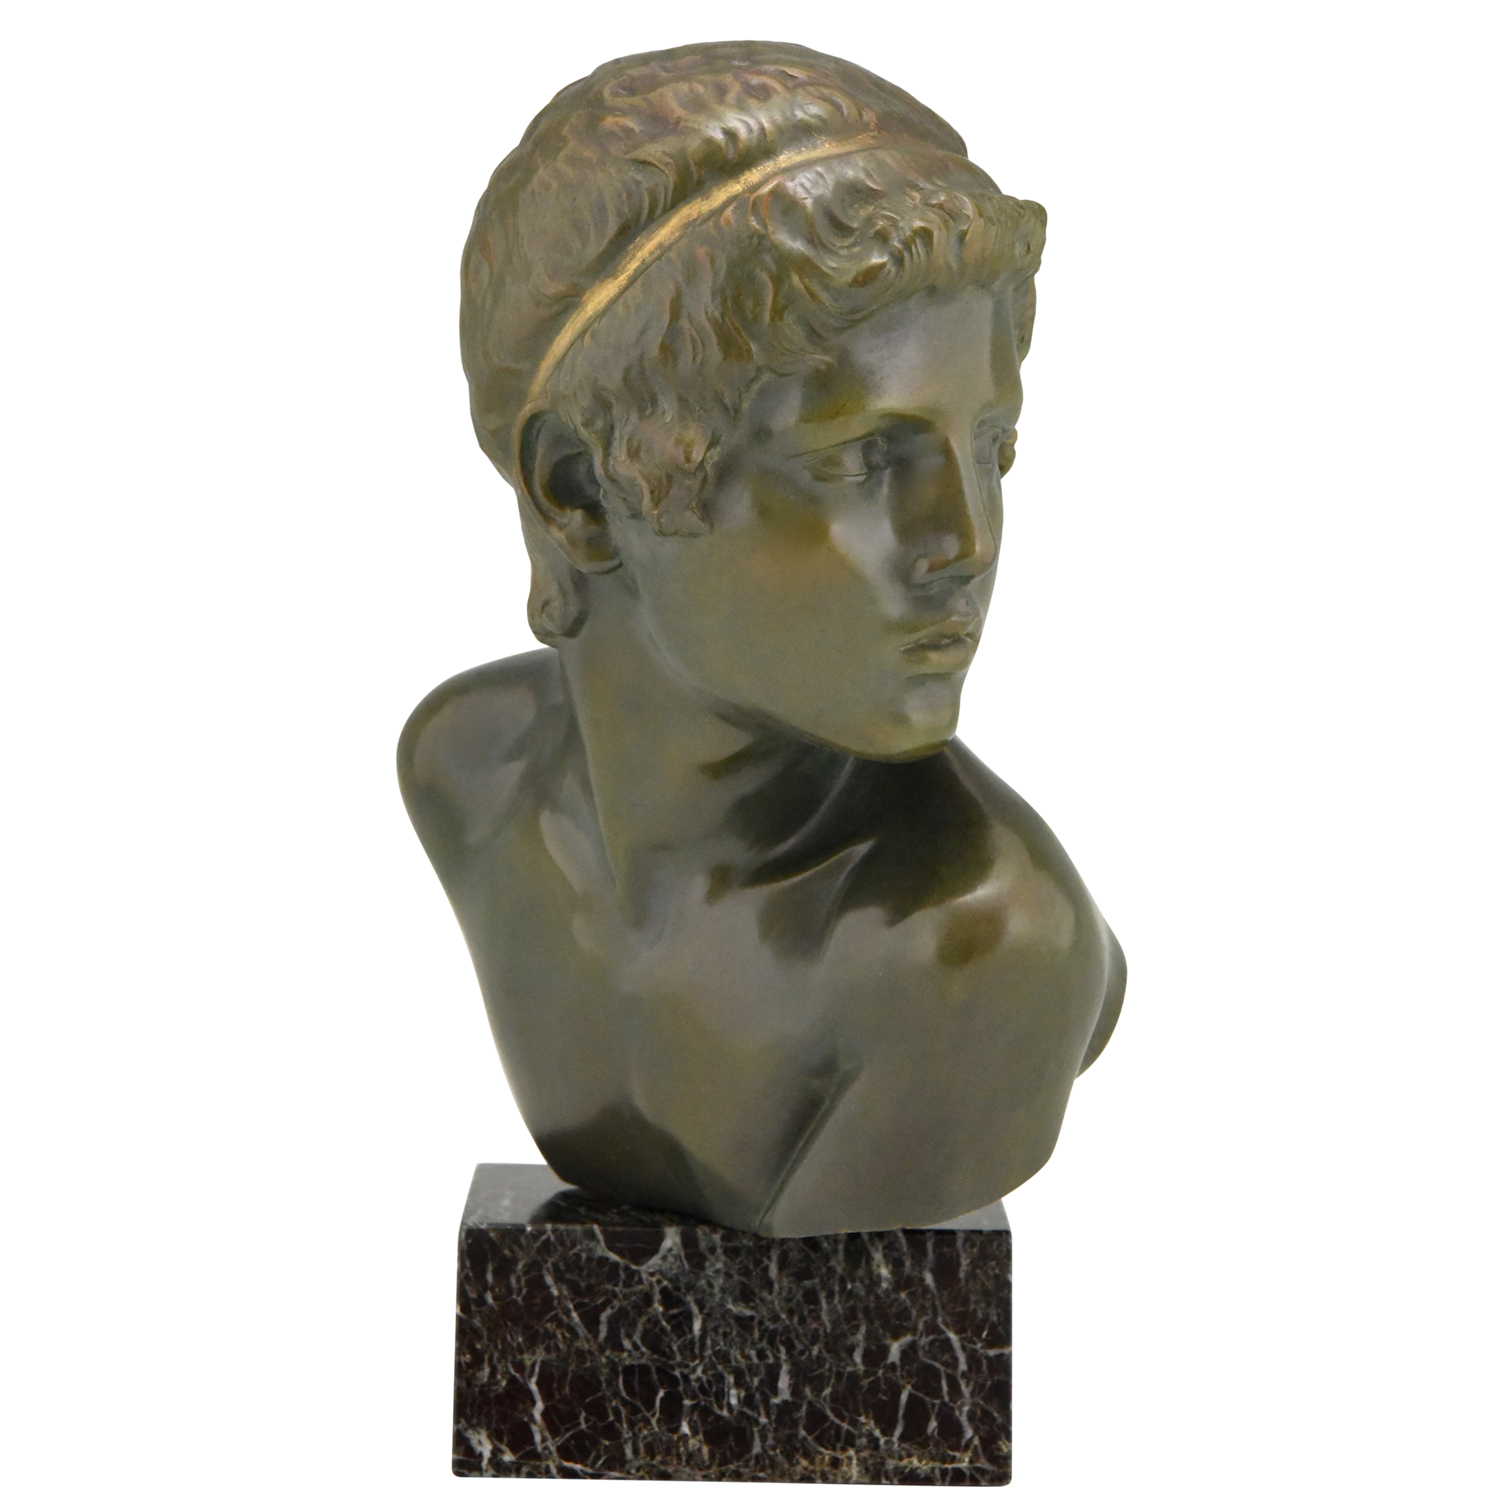 Art Deco bronze sculpture bust young Achilles 34 cm /13 inch - Deconamic